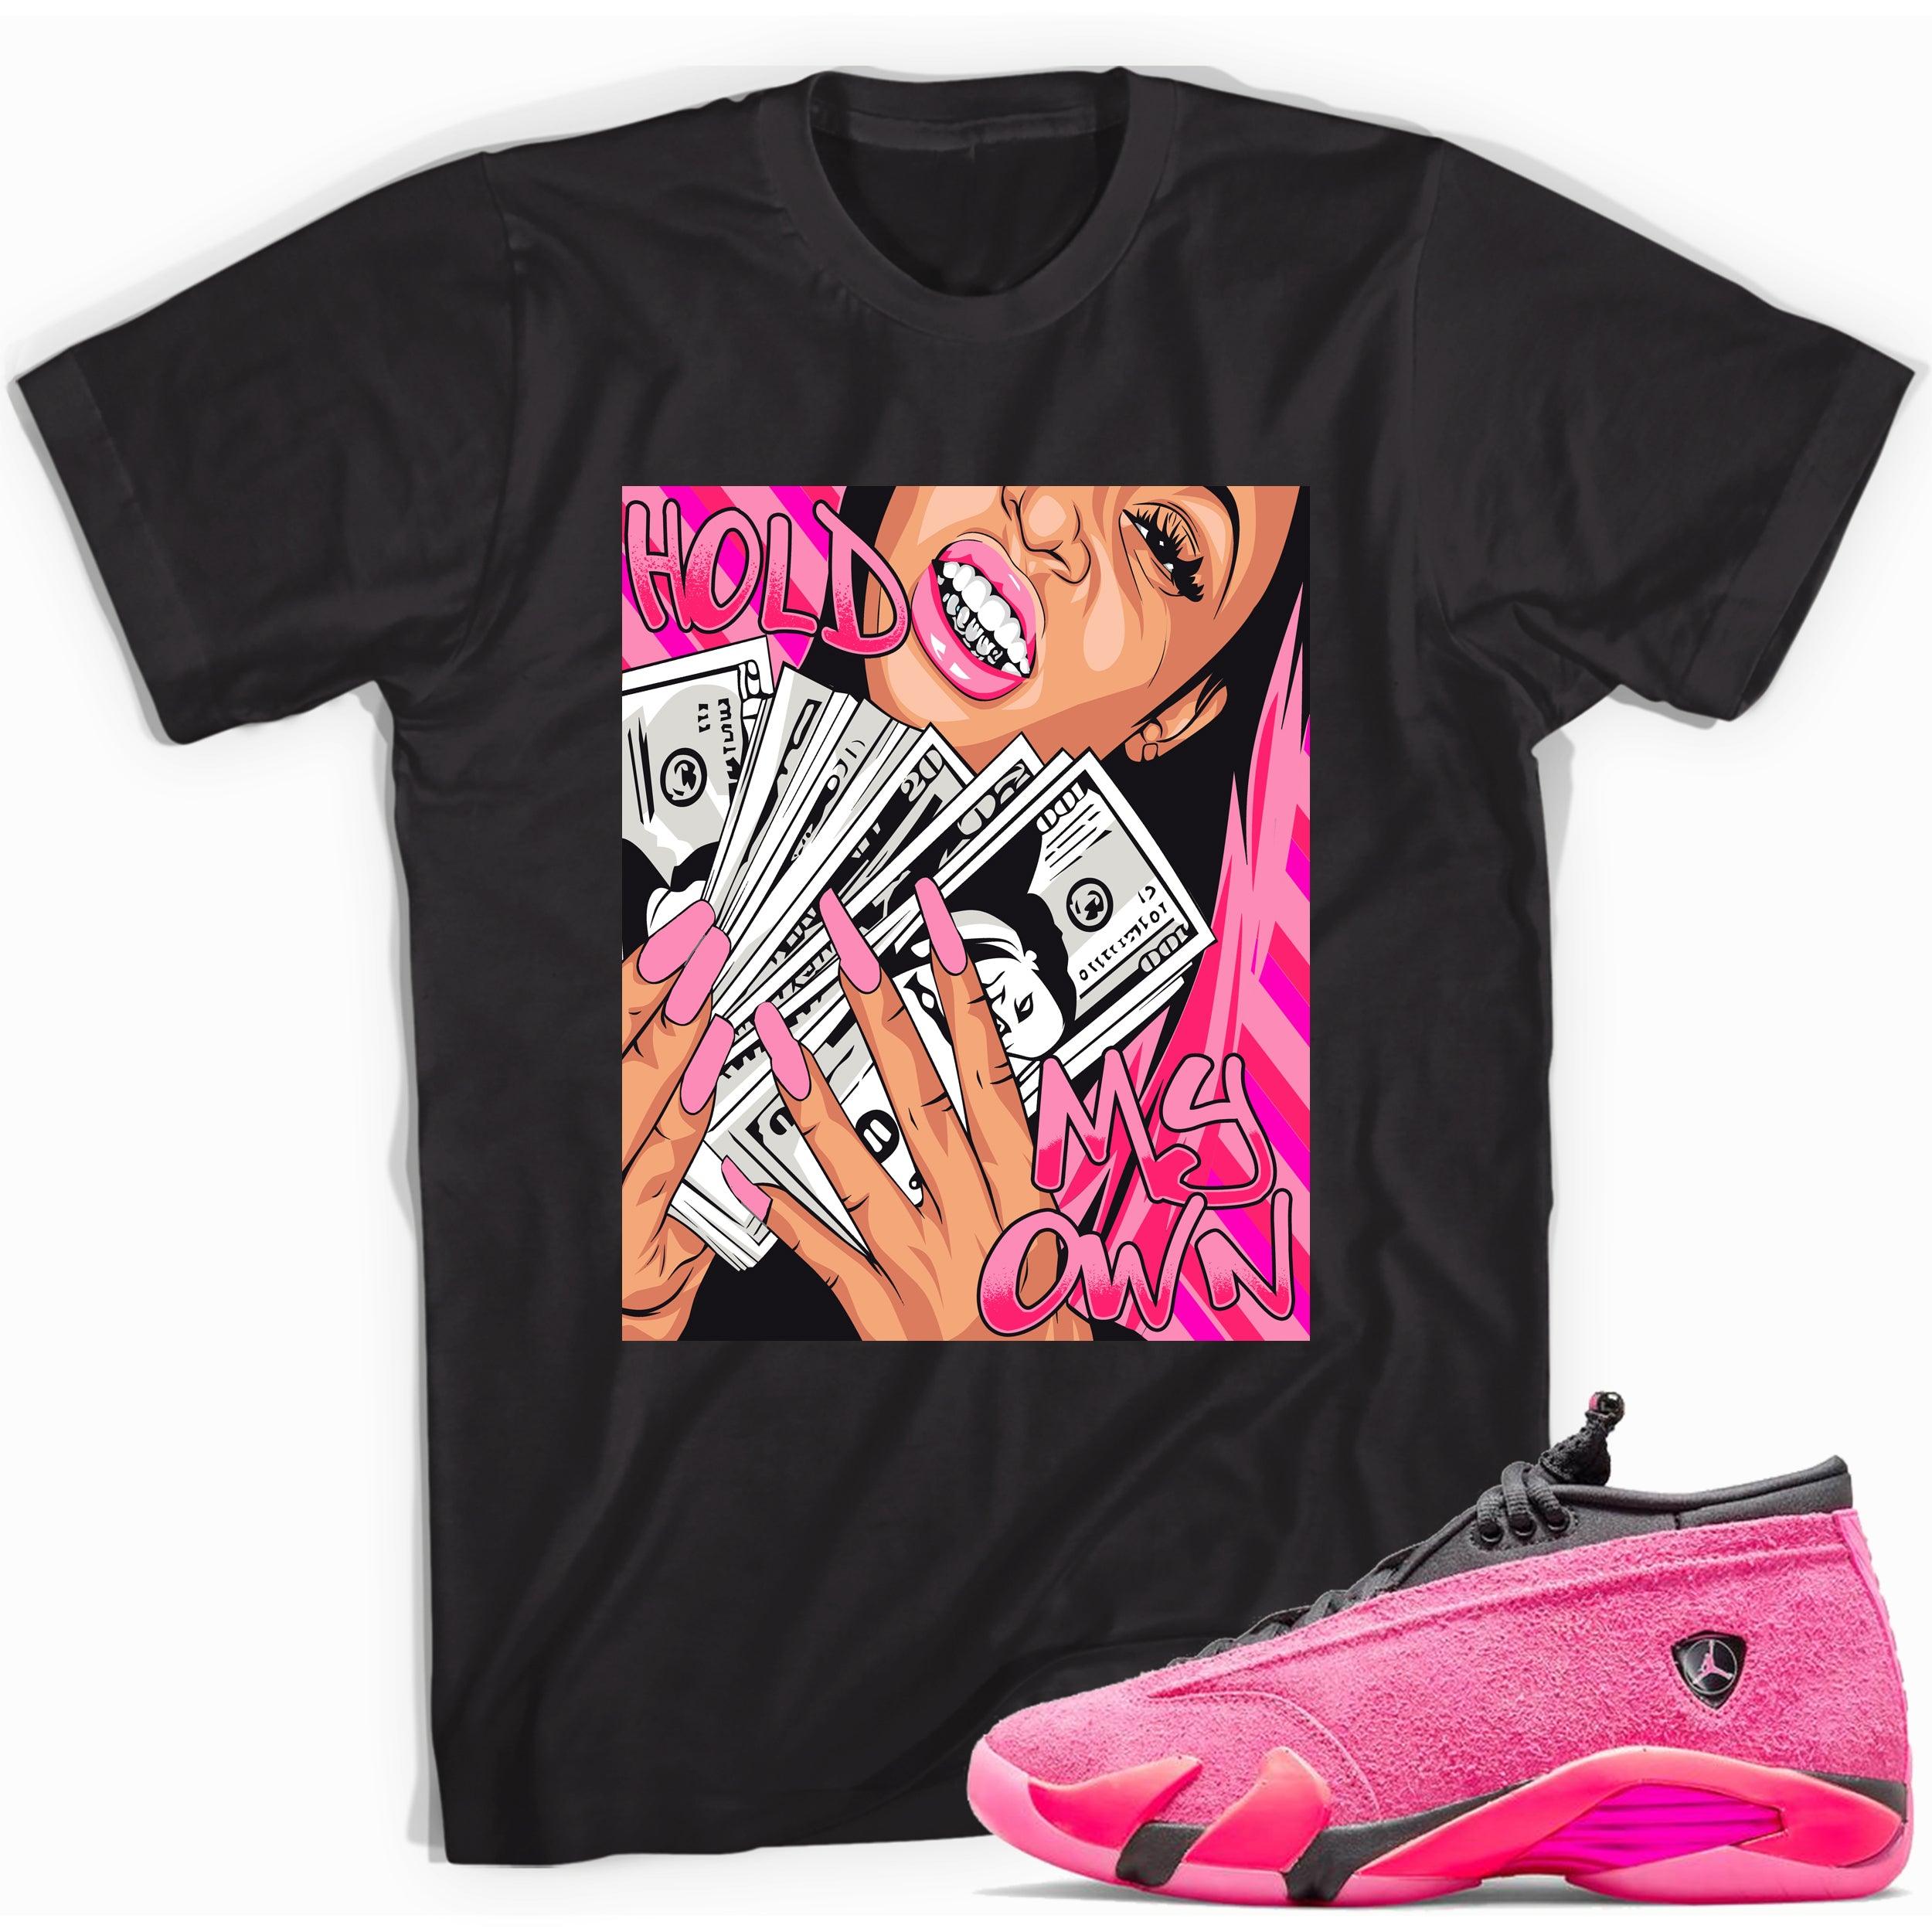 Black Hold My Own Shirt Jordan 14s Low Shocking Pink photo